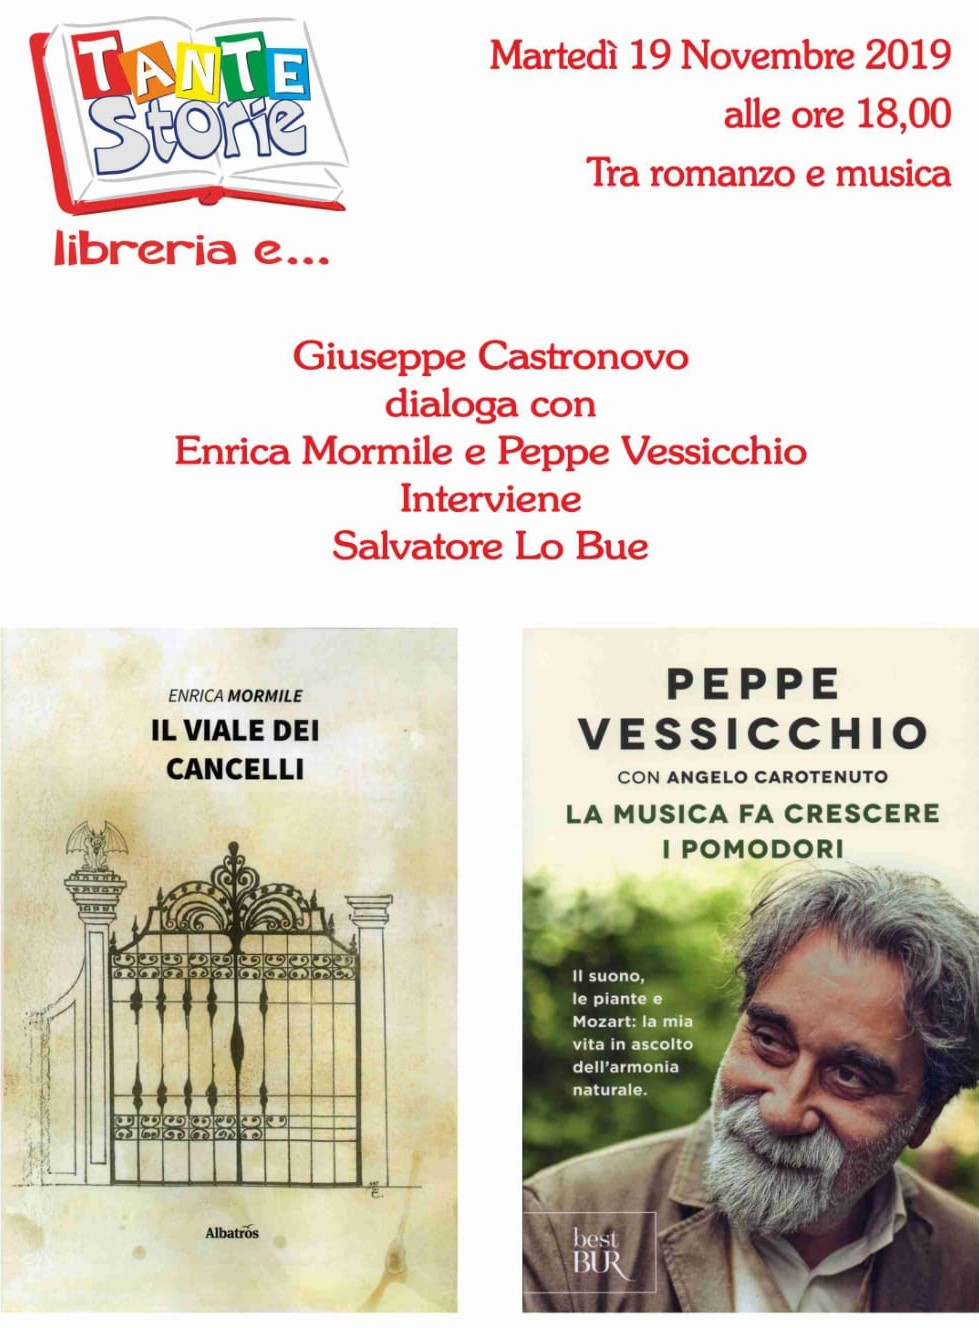 Palermo, tra romanzo e musica: incontro con Enrica Mormile e Peppe Vessicchio